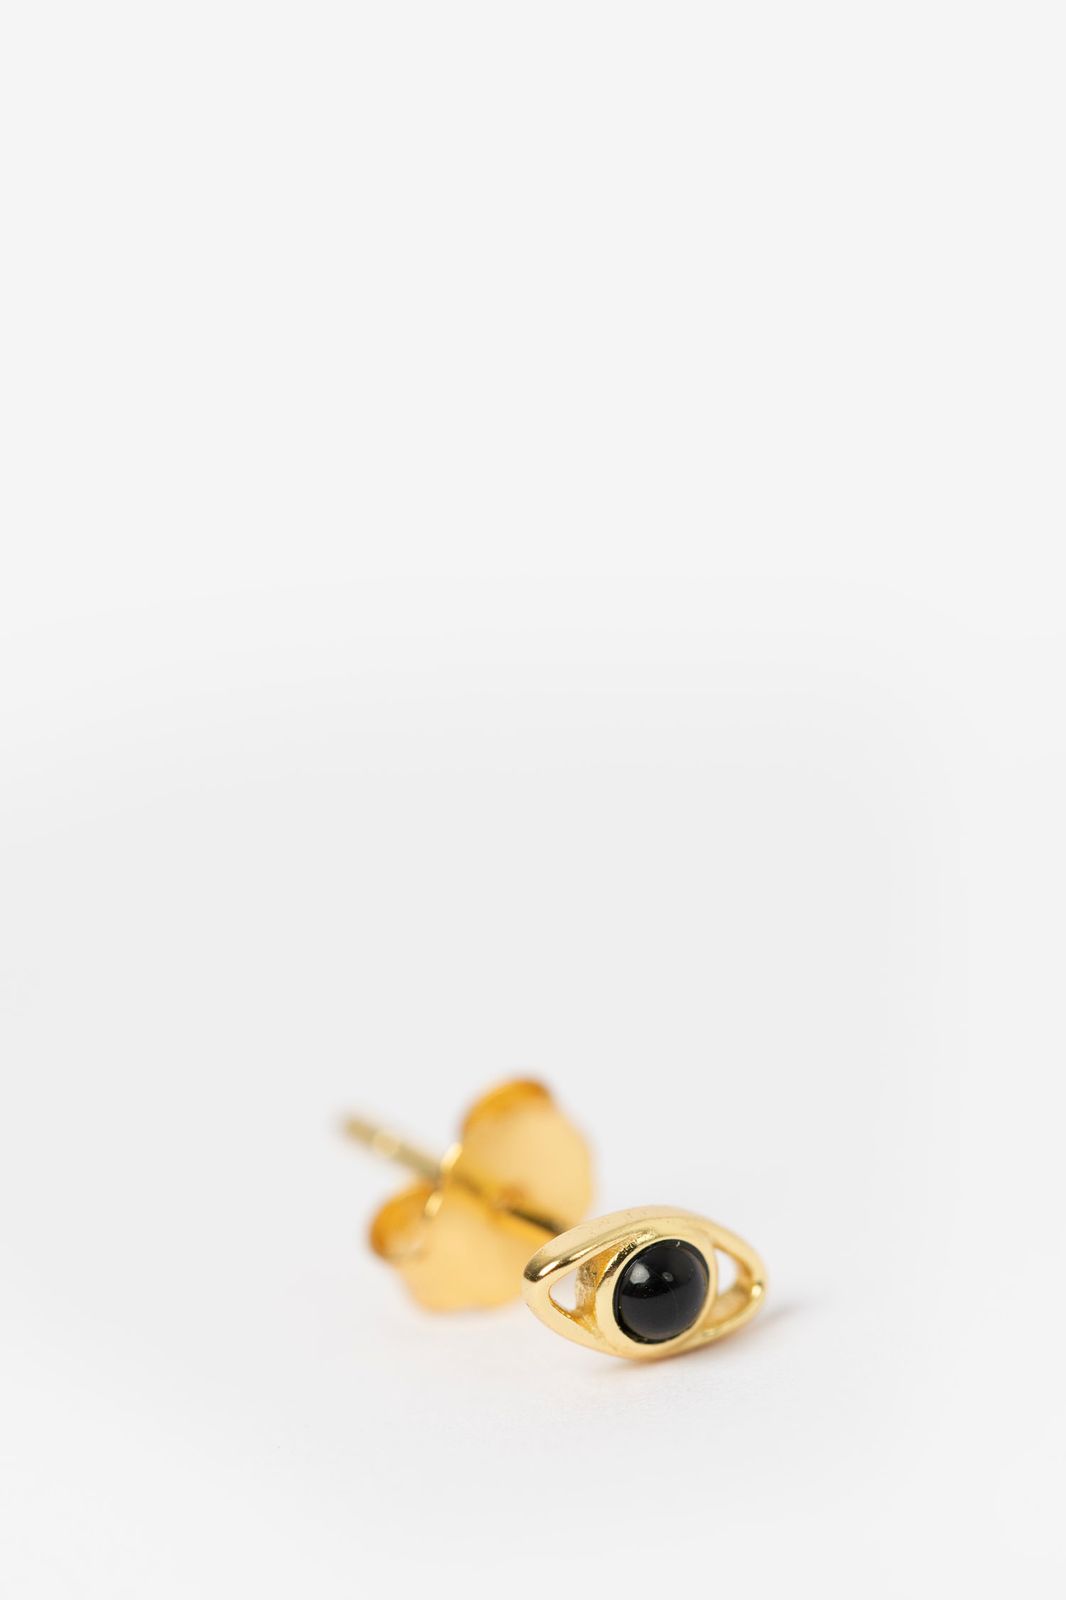 Gold plated stud oorbellen oog met zwart steentje